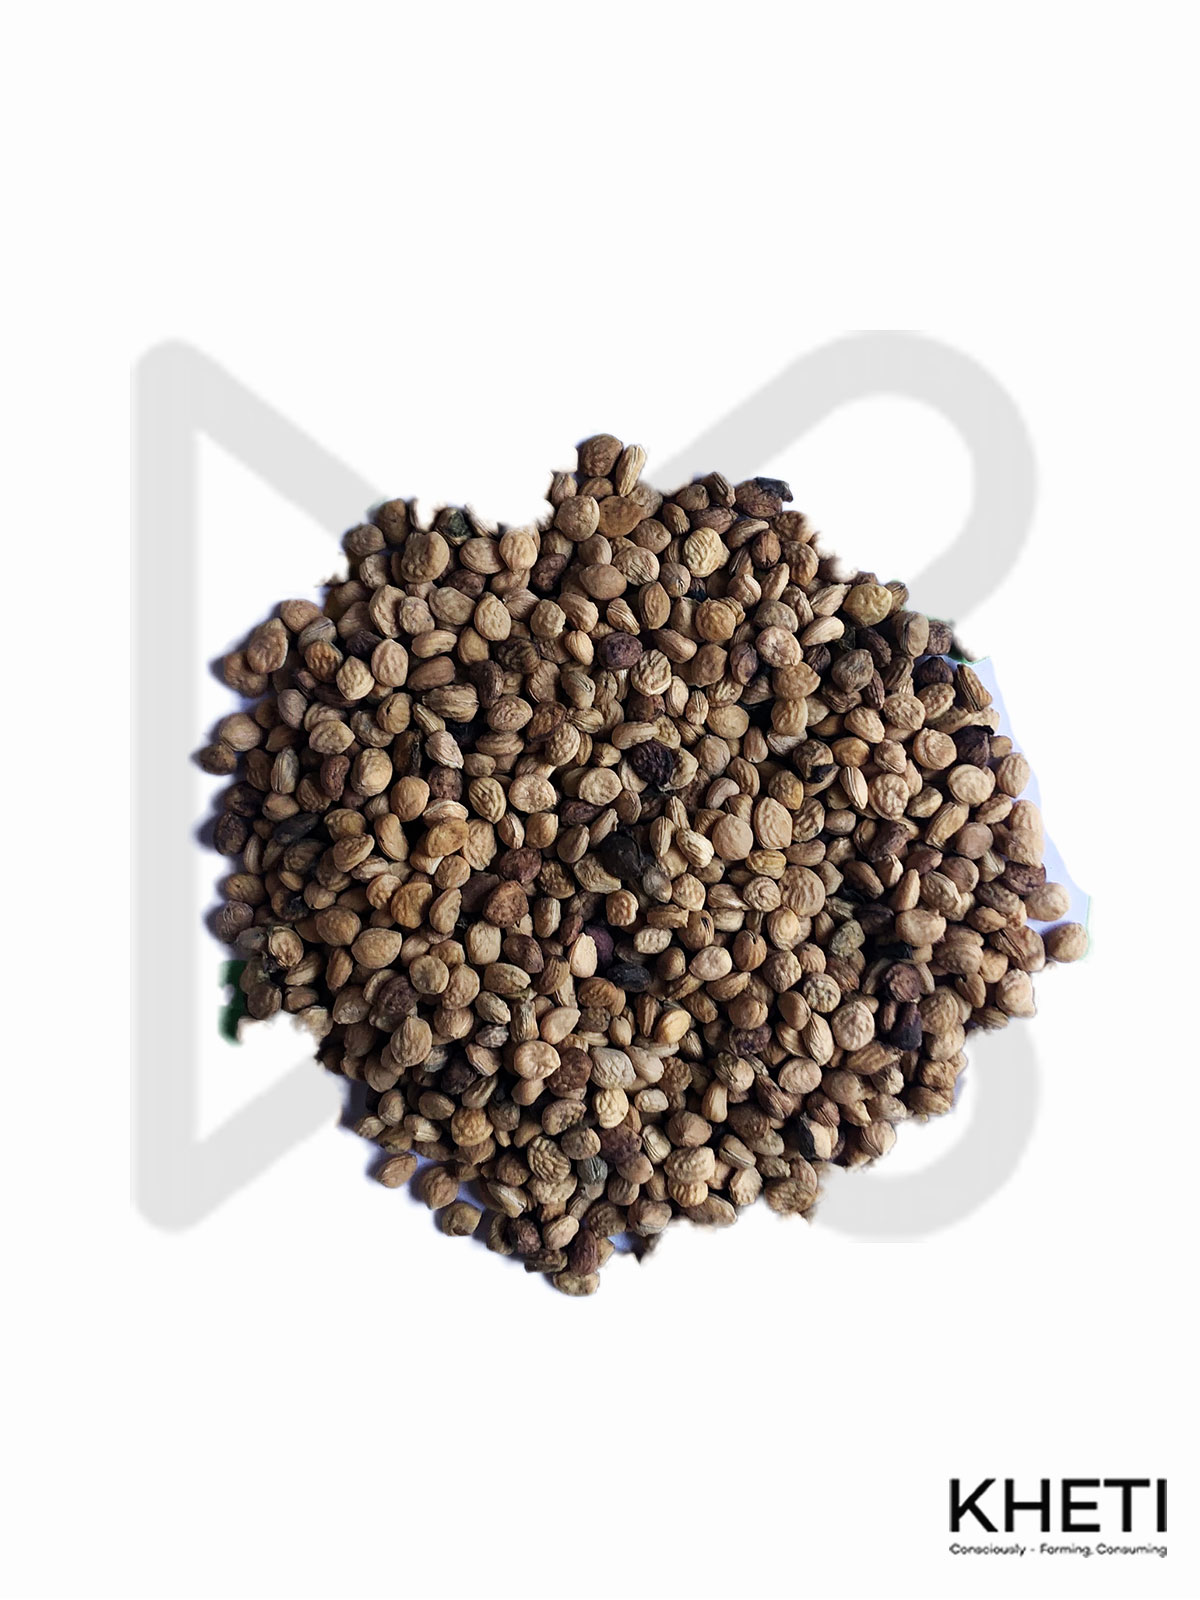 Rauvolfia serpentina ( sarpagandha) seeds